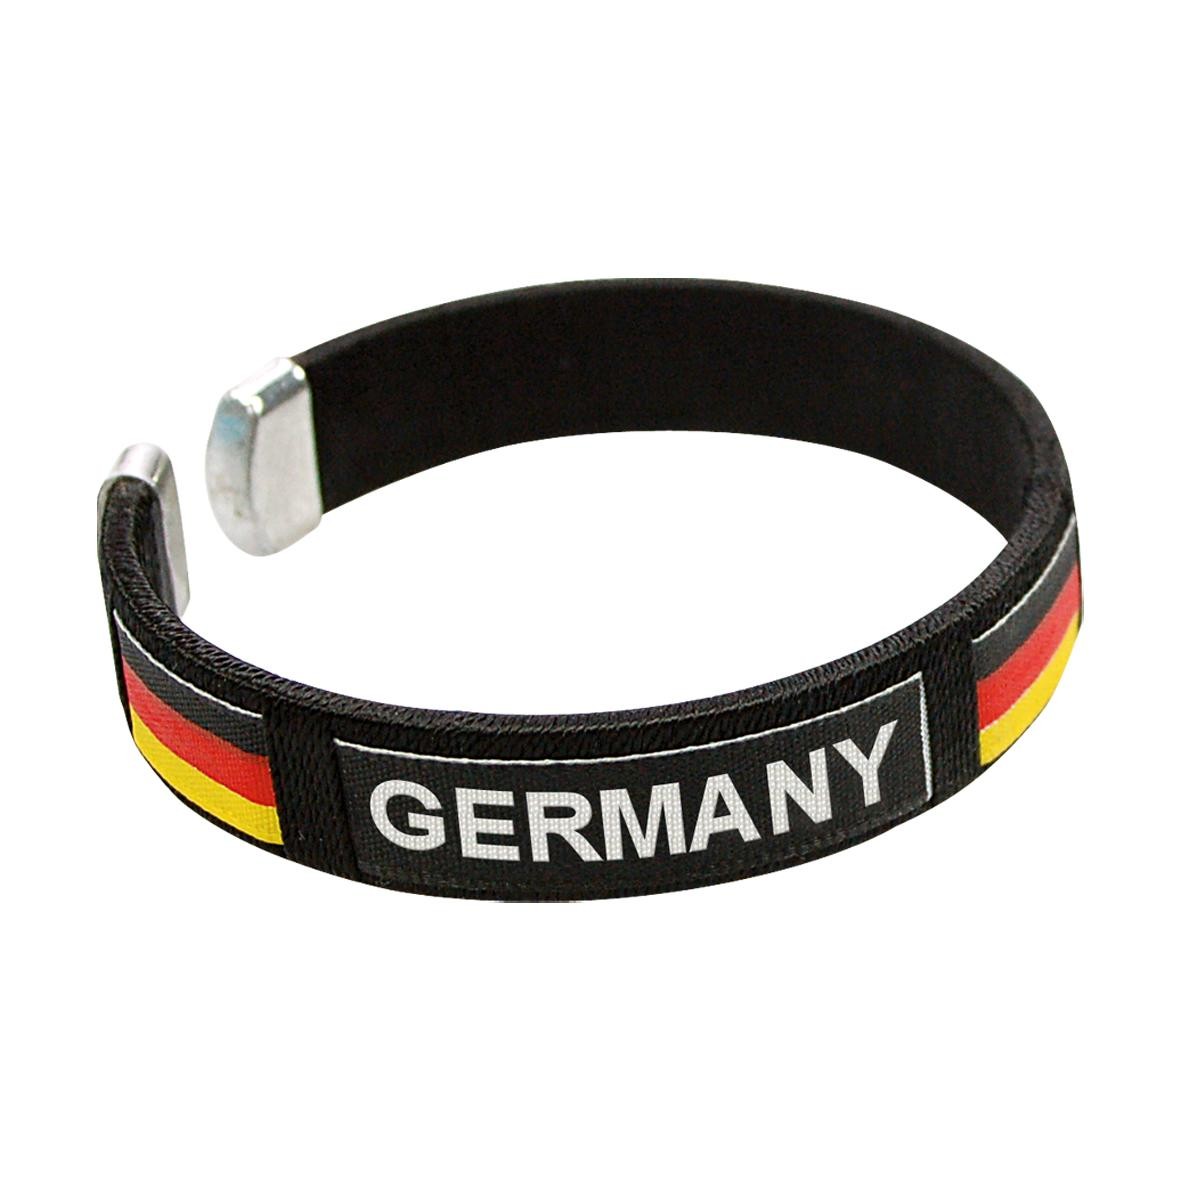 Fahne, selbstaufblasend Deutschland, groß, Deutschland -Farben-08595022-00000